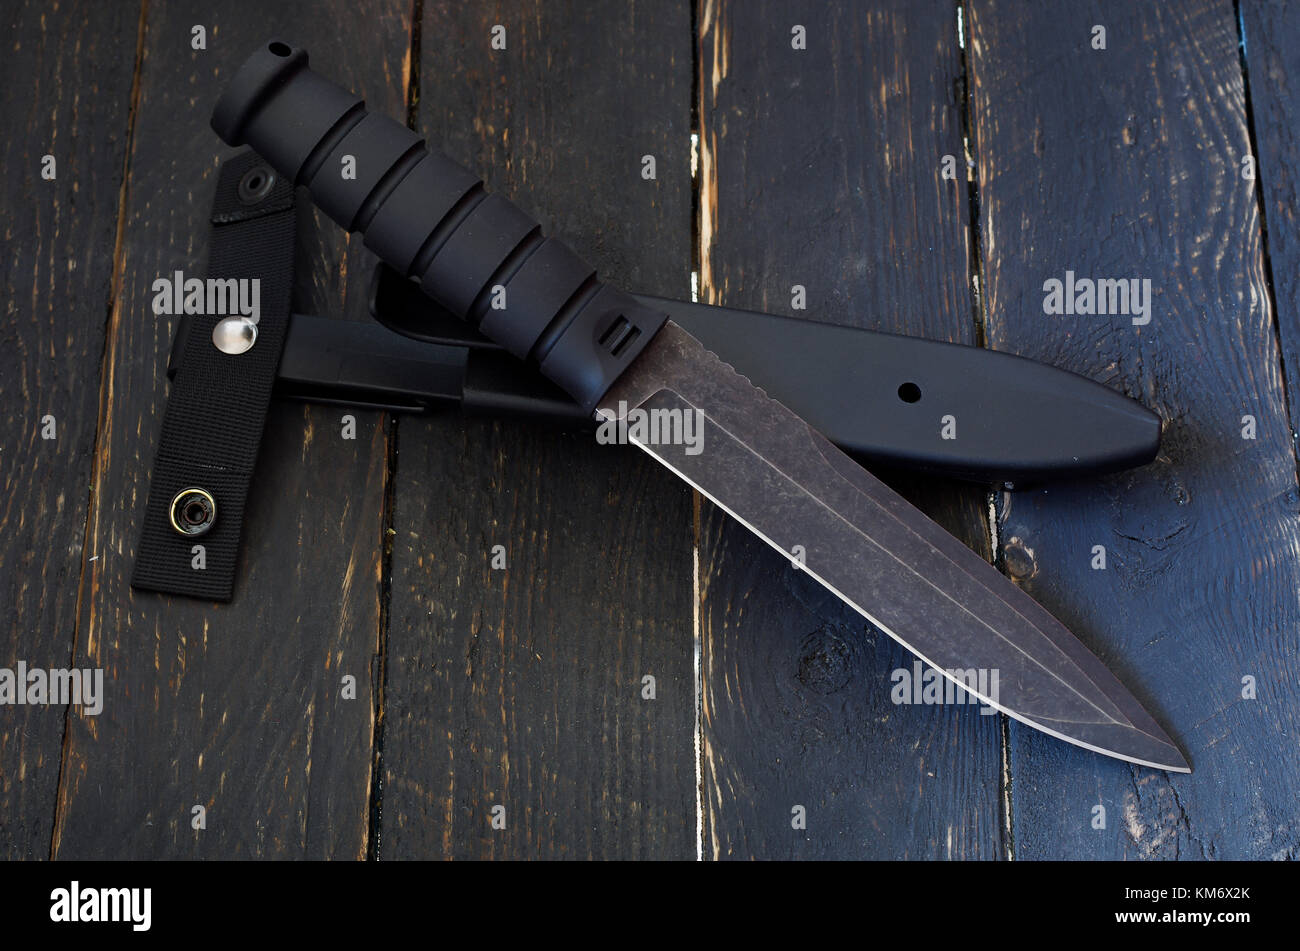 Taschenmesser für militärische Einsätze mit Koffer. Das Messer ist Diagonal  entfernt Stockfotografie - Alamy